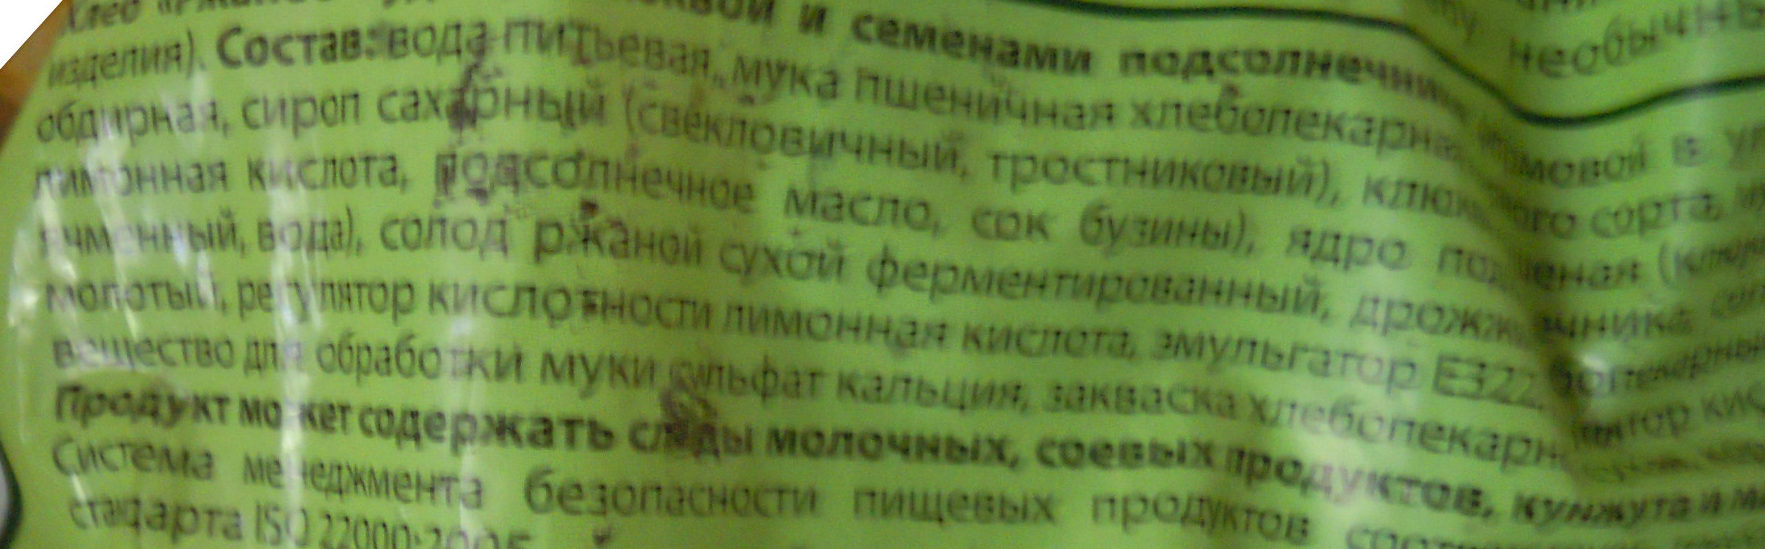 Ржаное чудо с клюквой и семенами подсолнечника - Ingredients - ru